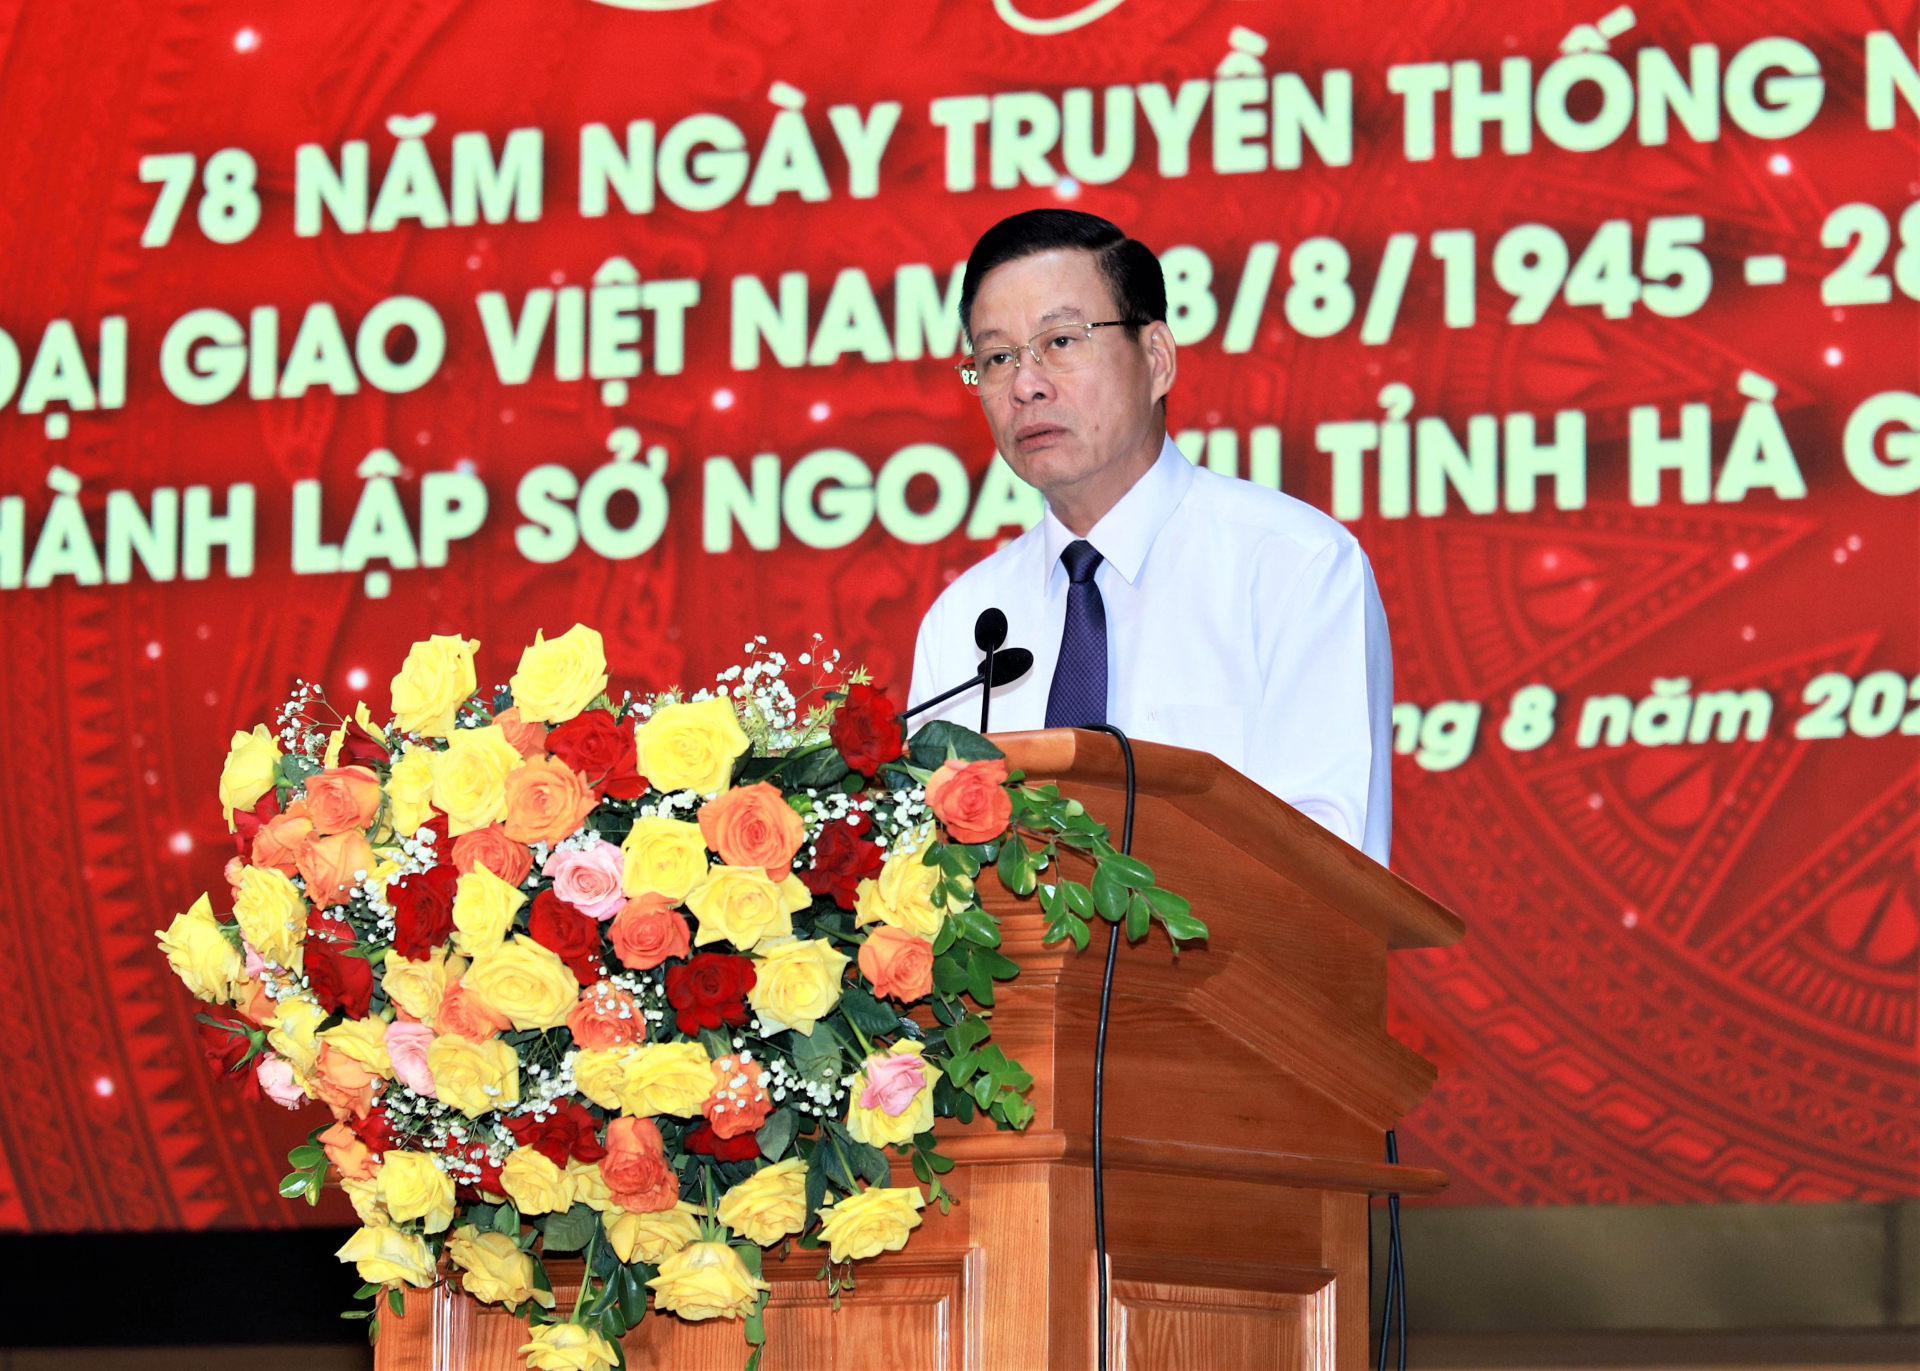 Phó Bí thư Tỉnh ủy, Chủ tịch UBND tỉnh Nguyễn Văn Sơn phát biểu tại buổi Lễ.